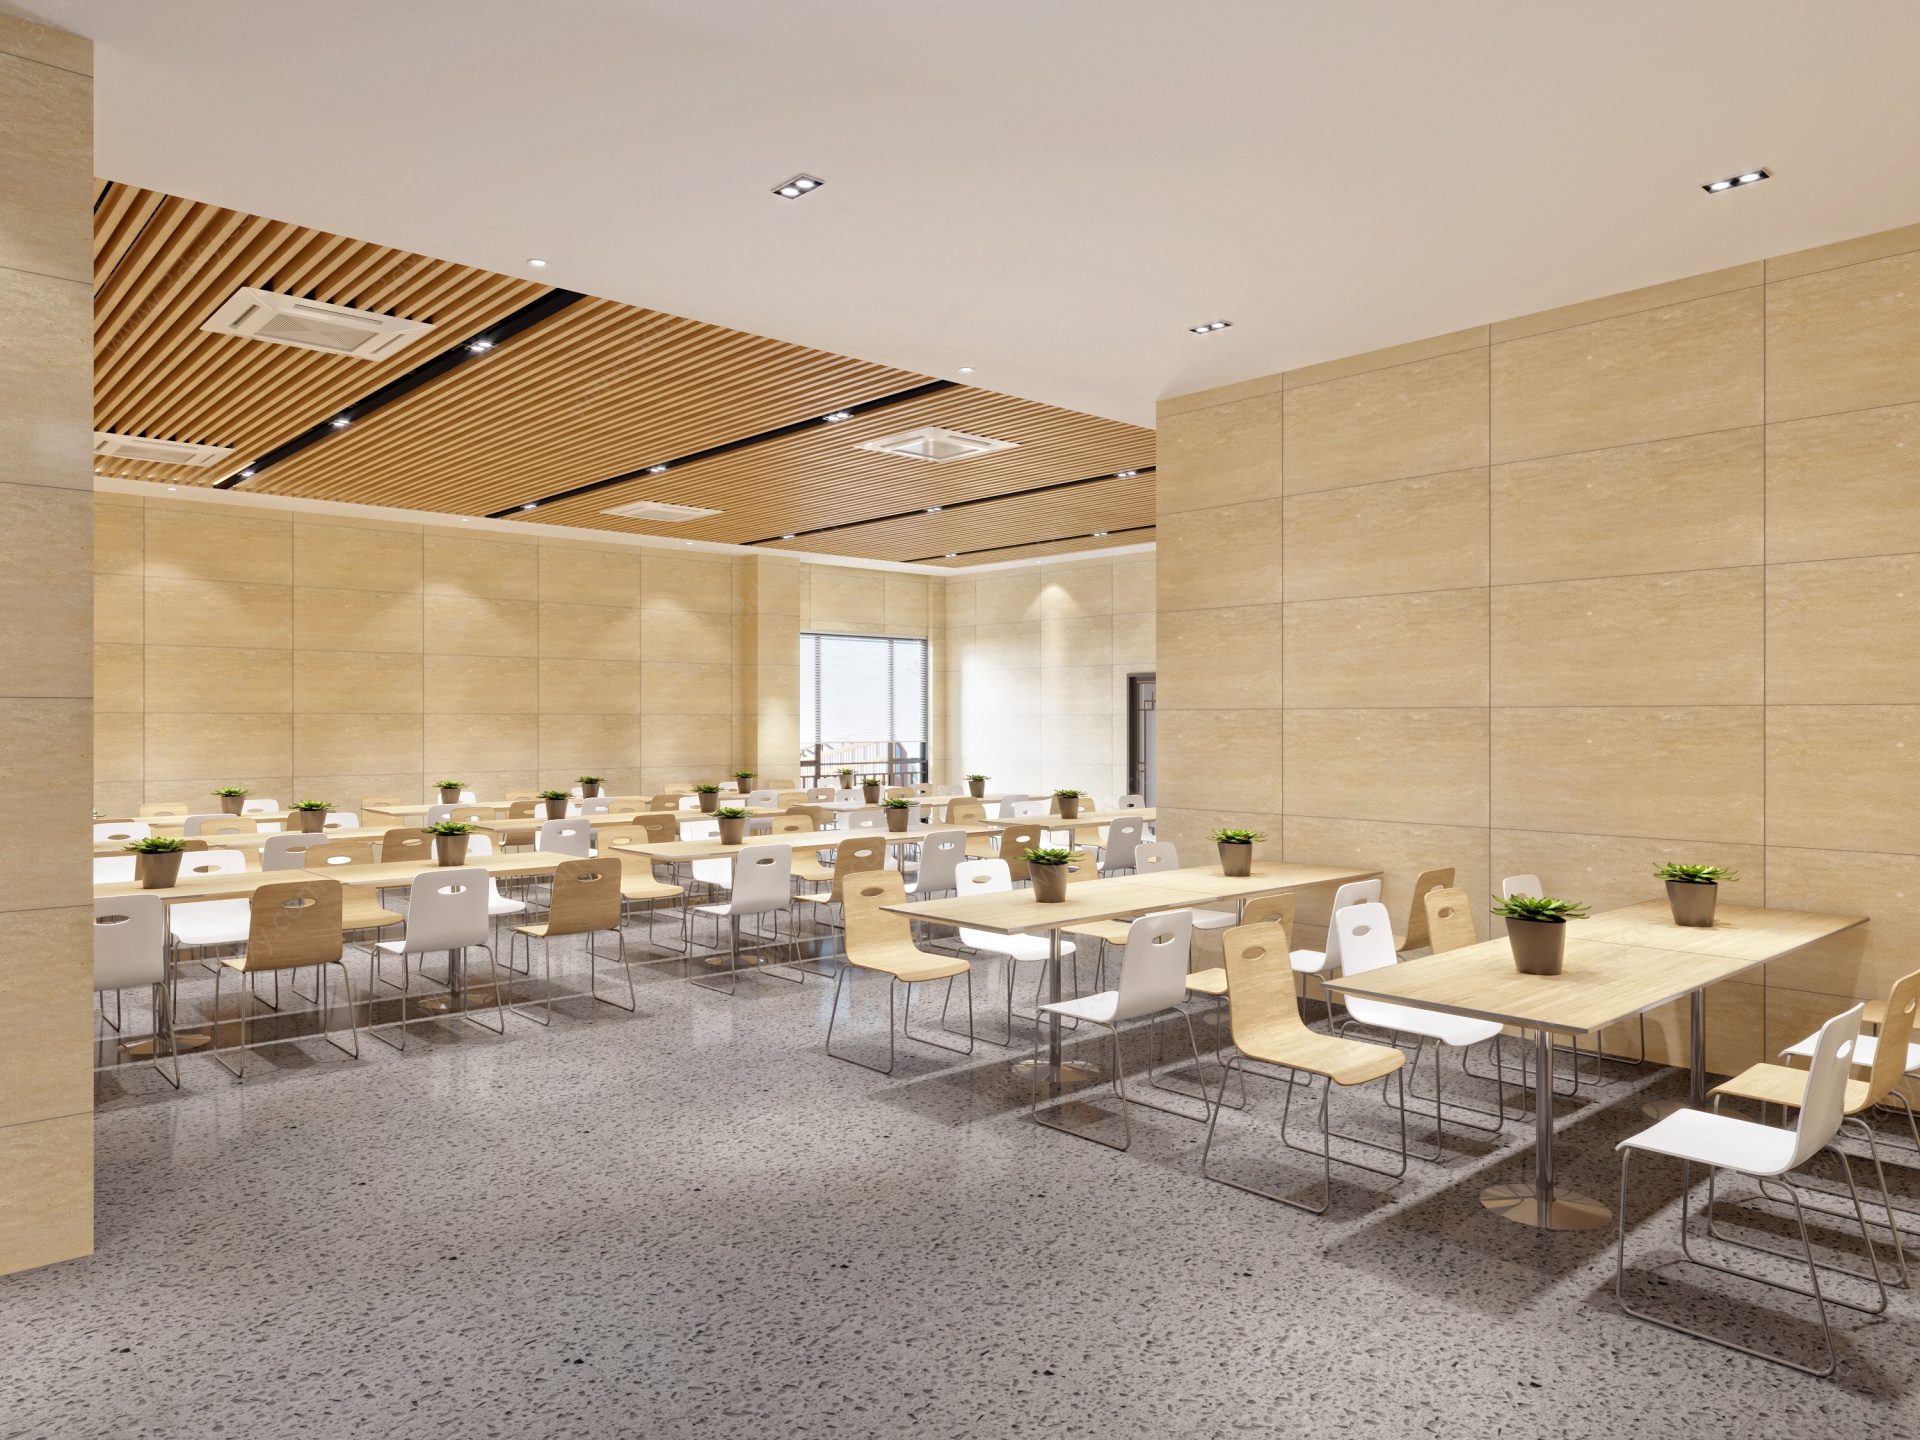 现代食堂餐饮空间3D模型